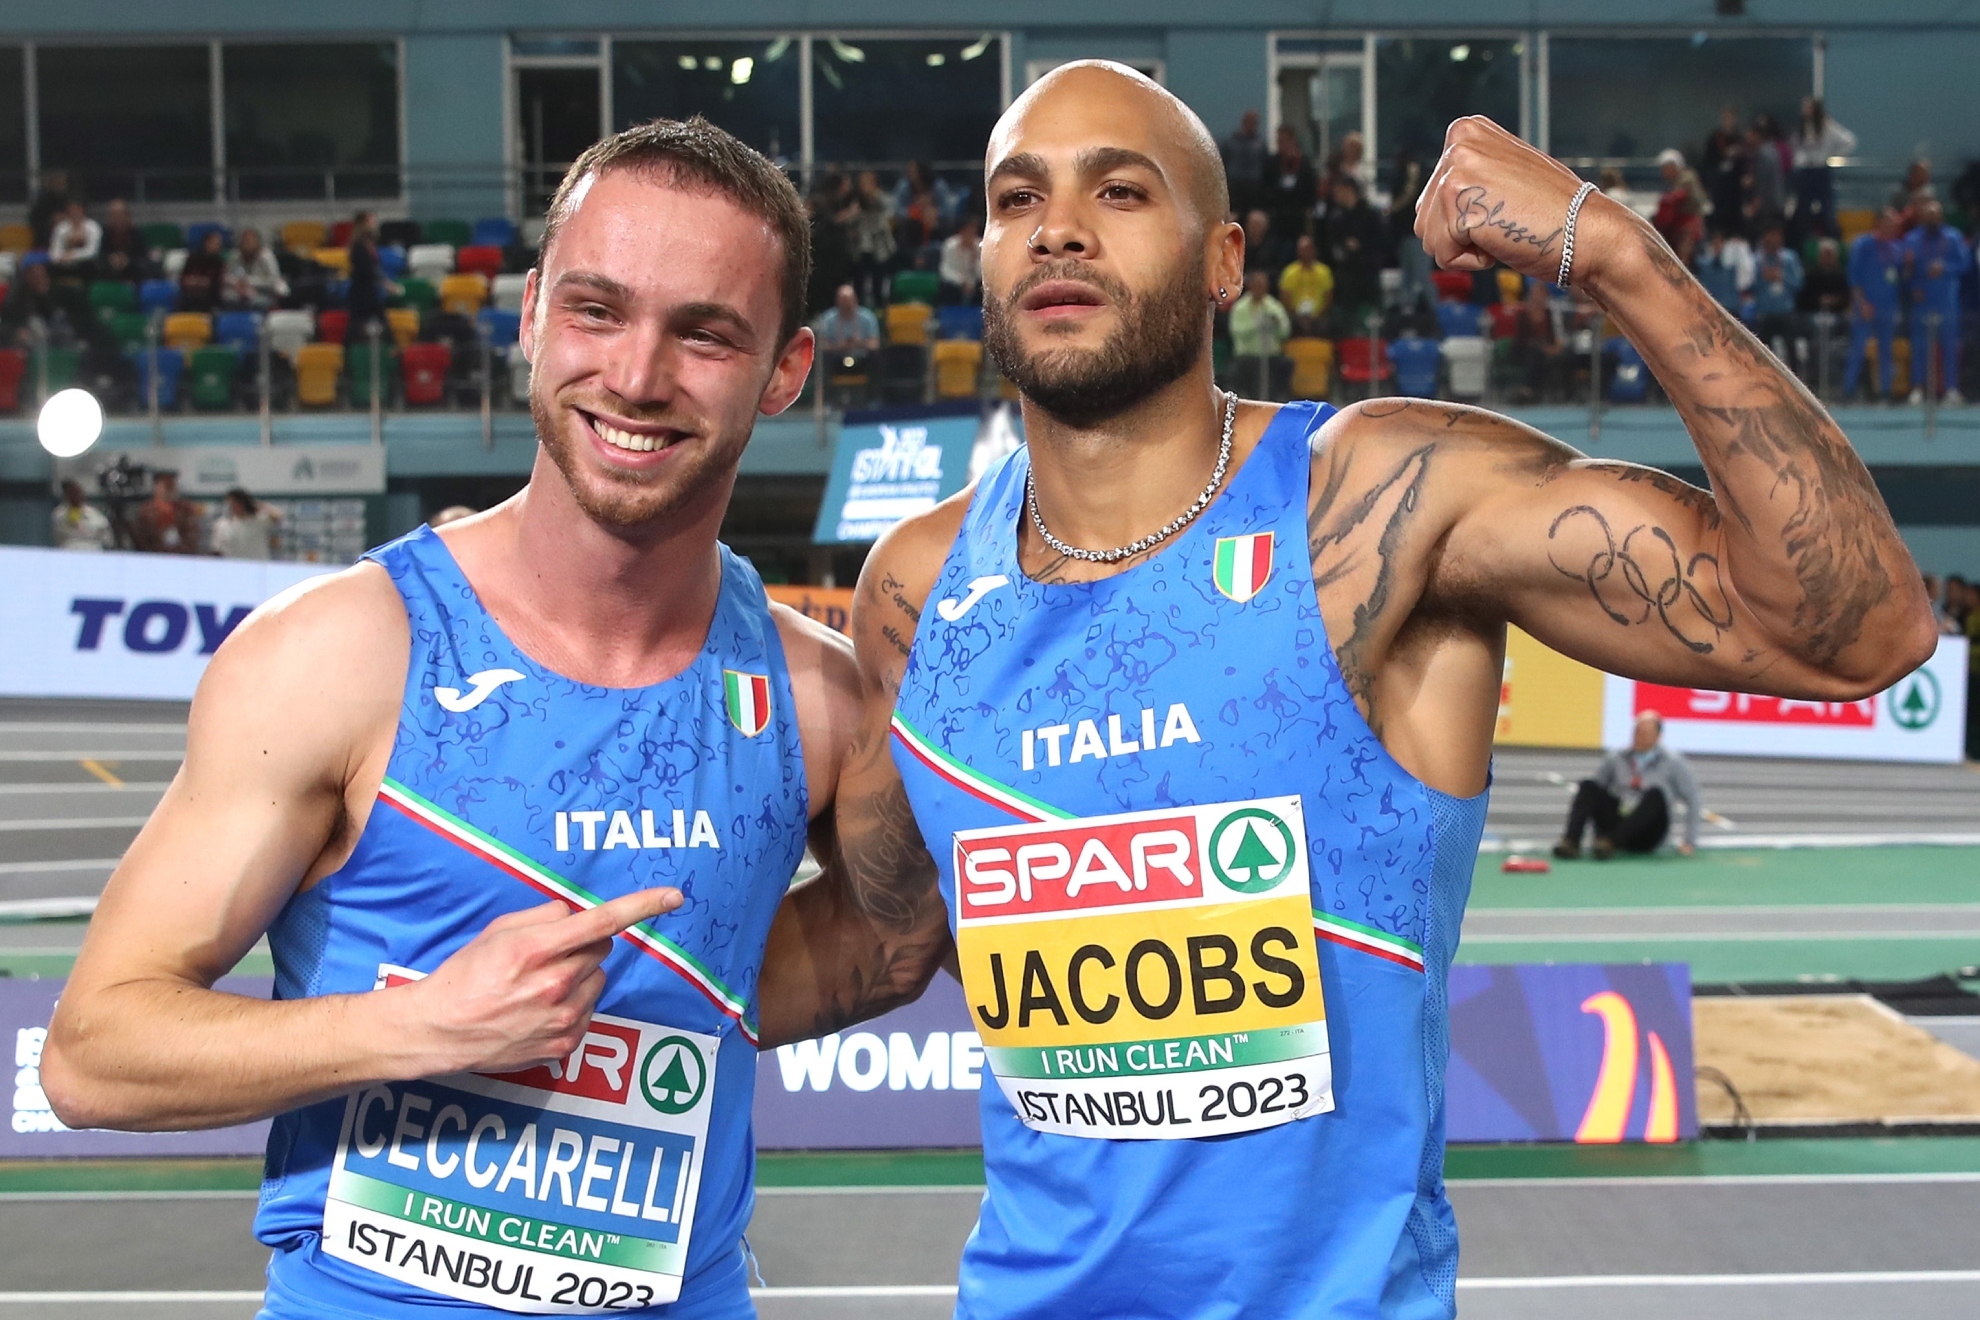 Doblete italiano en los 60 metros con 'sorpasso' incluido: Ceccarelli, oro